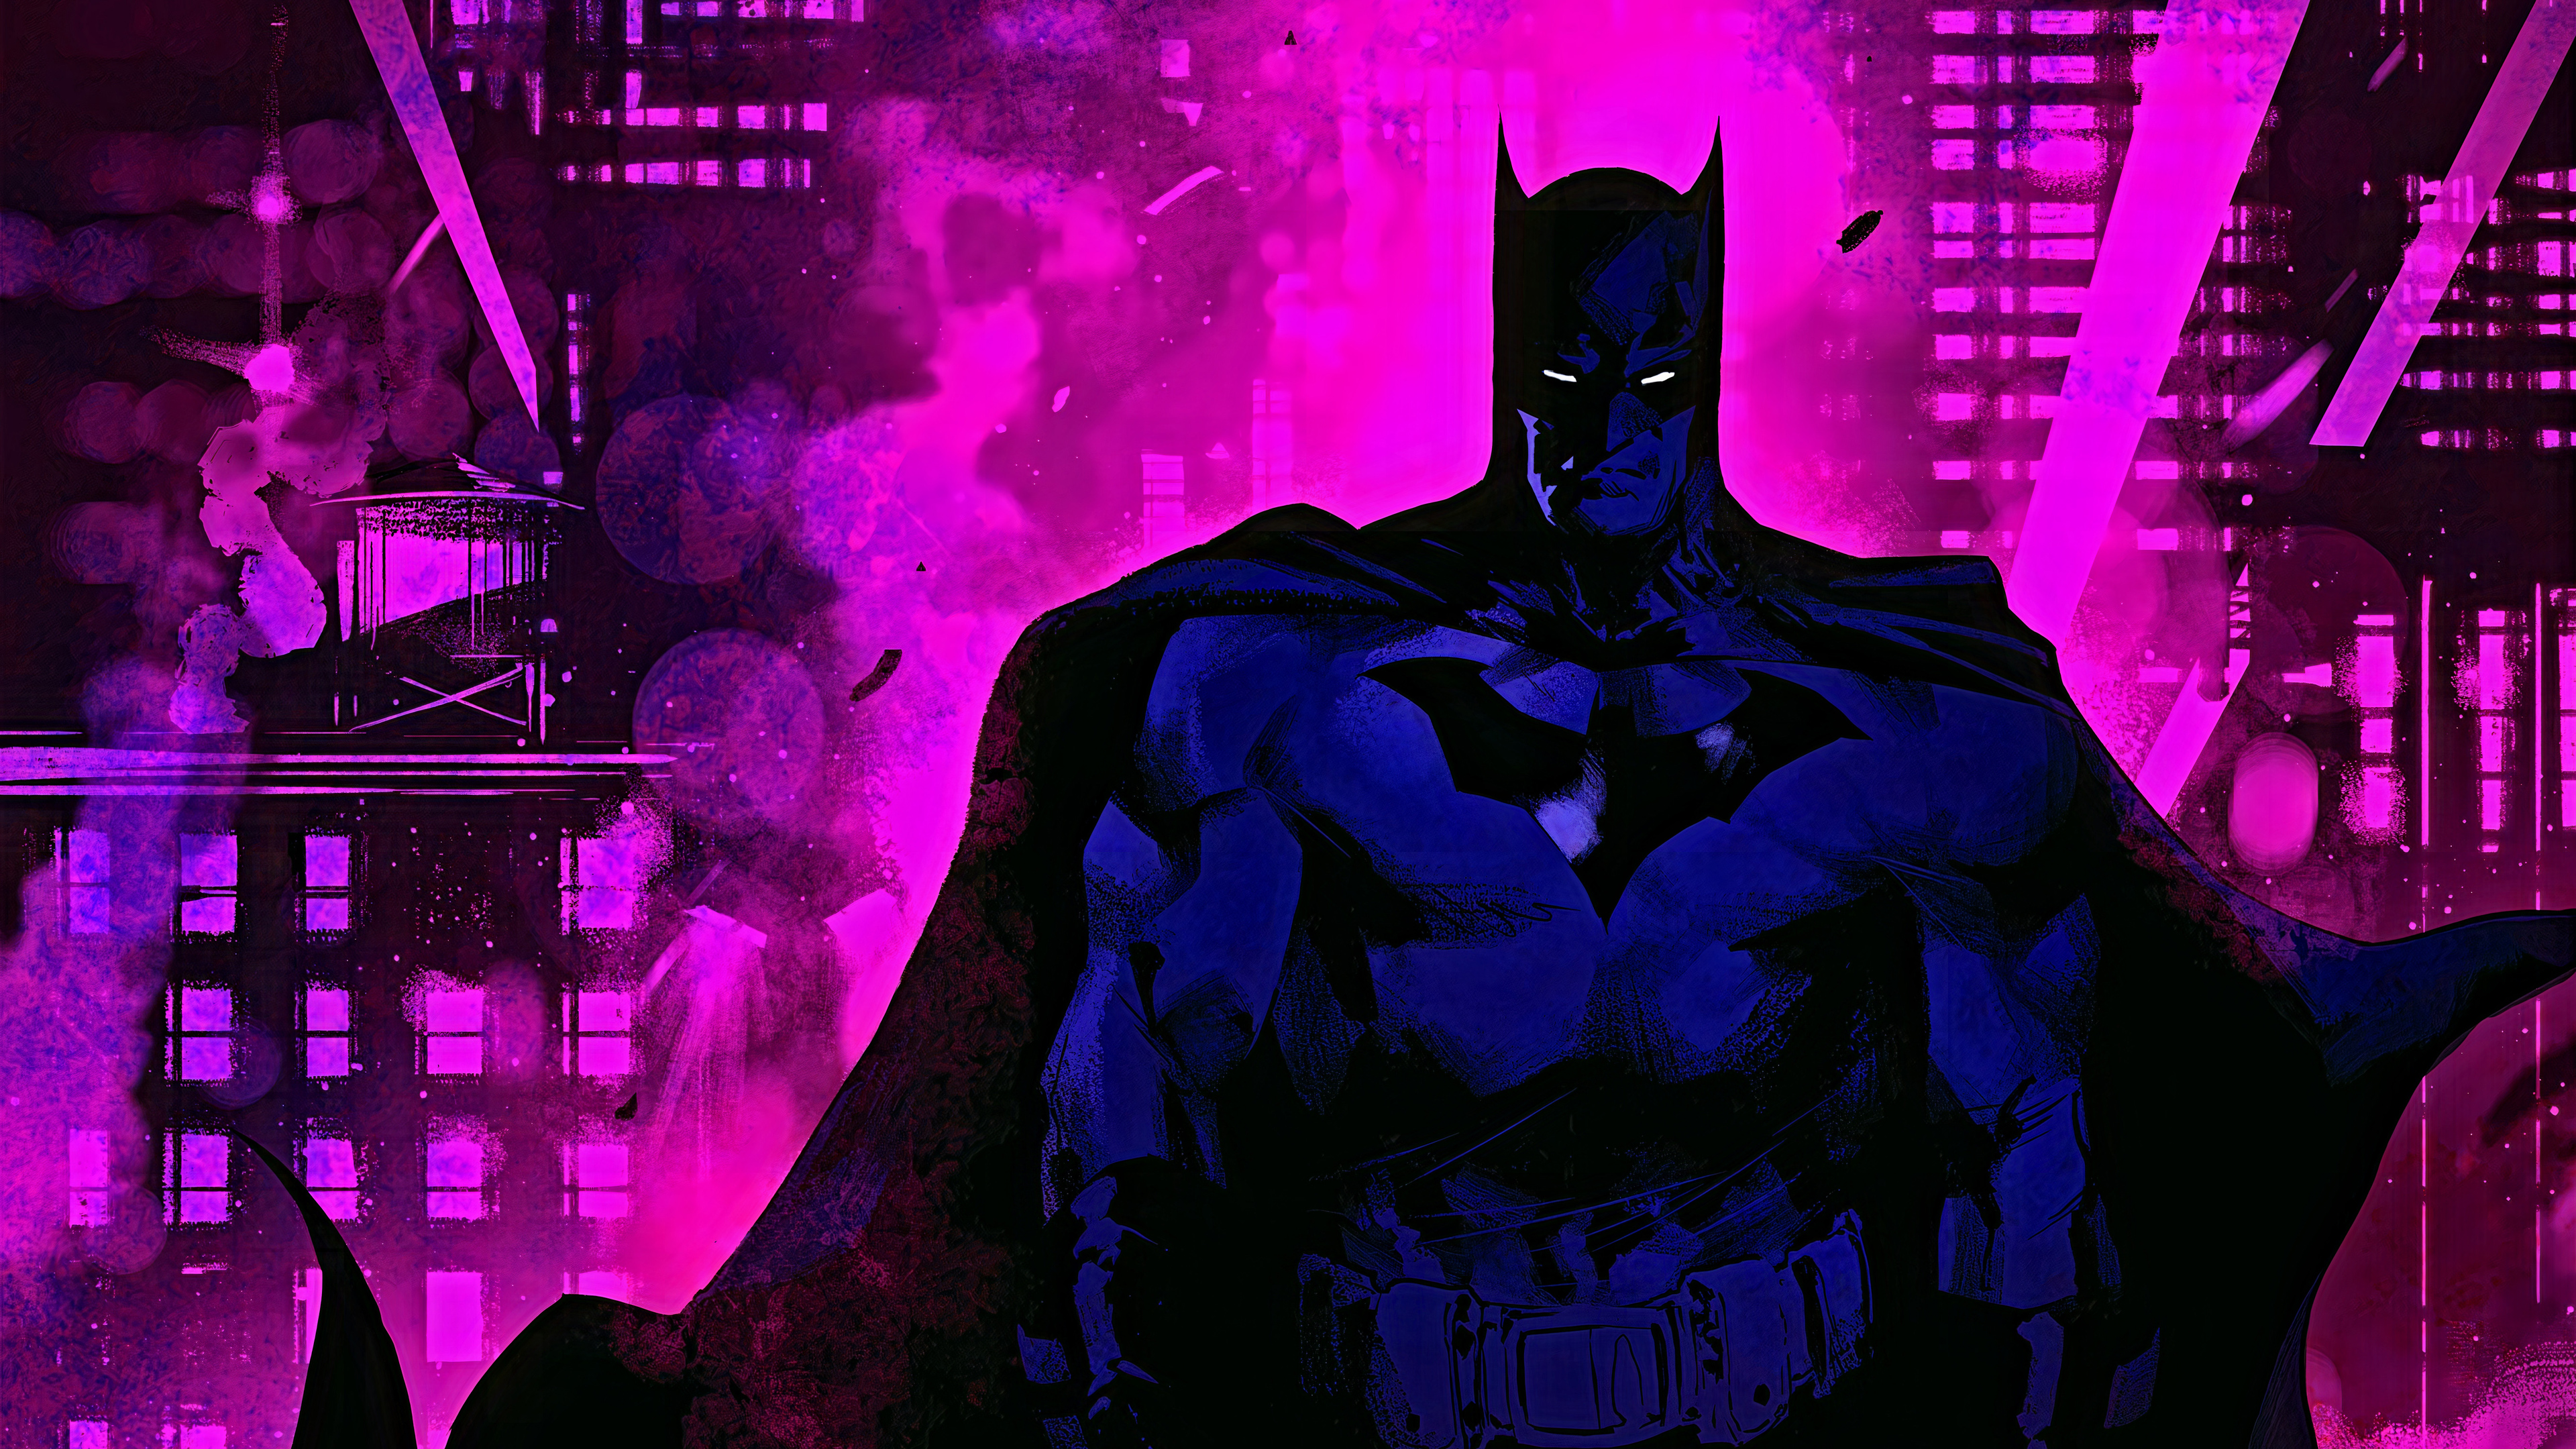 Siêu anh hùng Batman tím là một trong những hình ảnh được yêu thích nhất trong thế giới siêu anh hùng. Với sự đậm chất tối giản màu tím, chiếc áo choàng đầy mê hoặc và quyền năng, chắc chắn sẽ khiến bạn cảm thấy thật sự nổi bật.